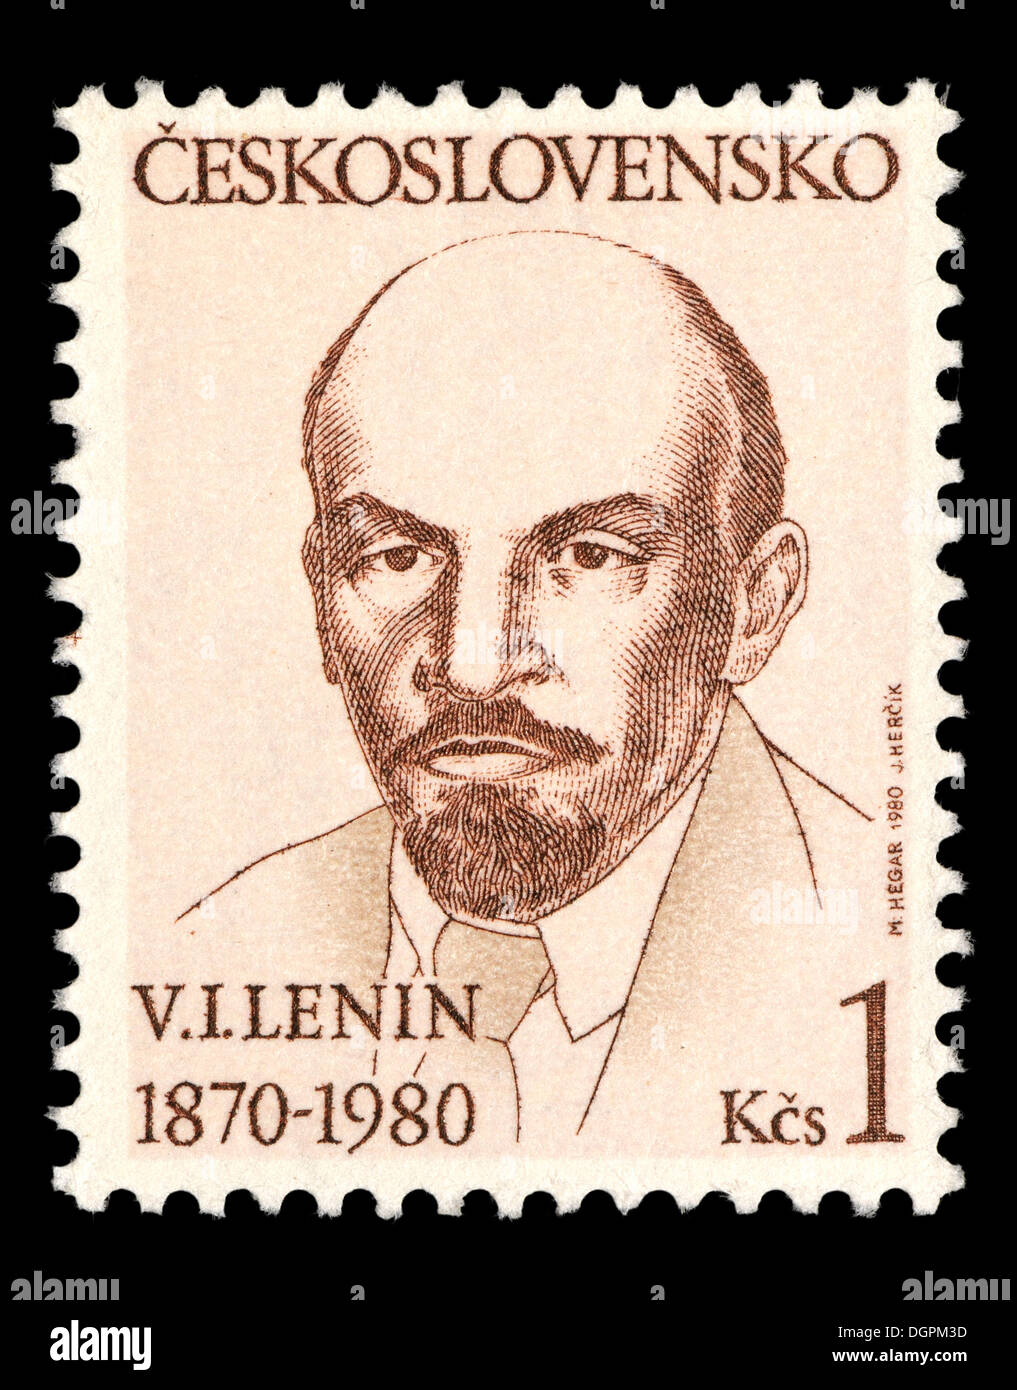 Postage stamp from Czechoslovakia - Vladimir Ilyich Lenin (1870-1924) Stock Photo